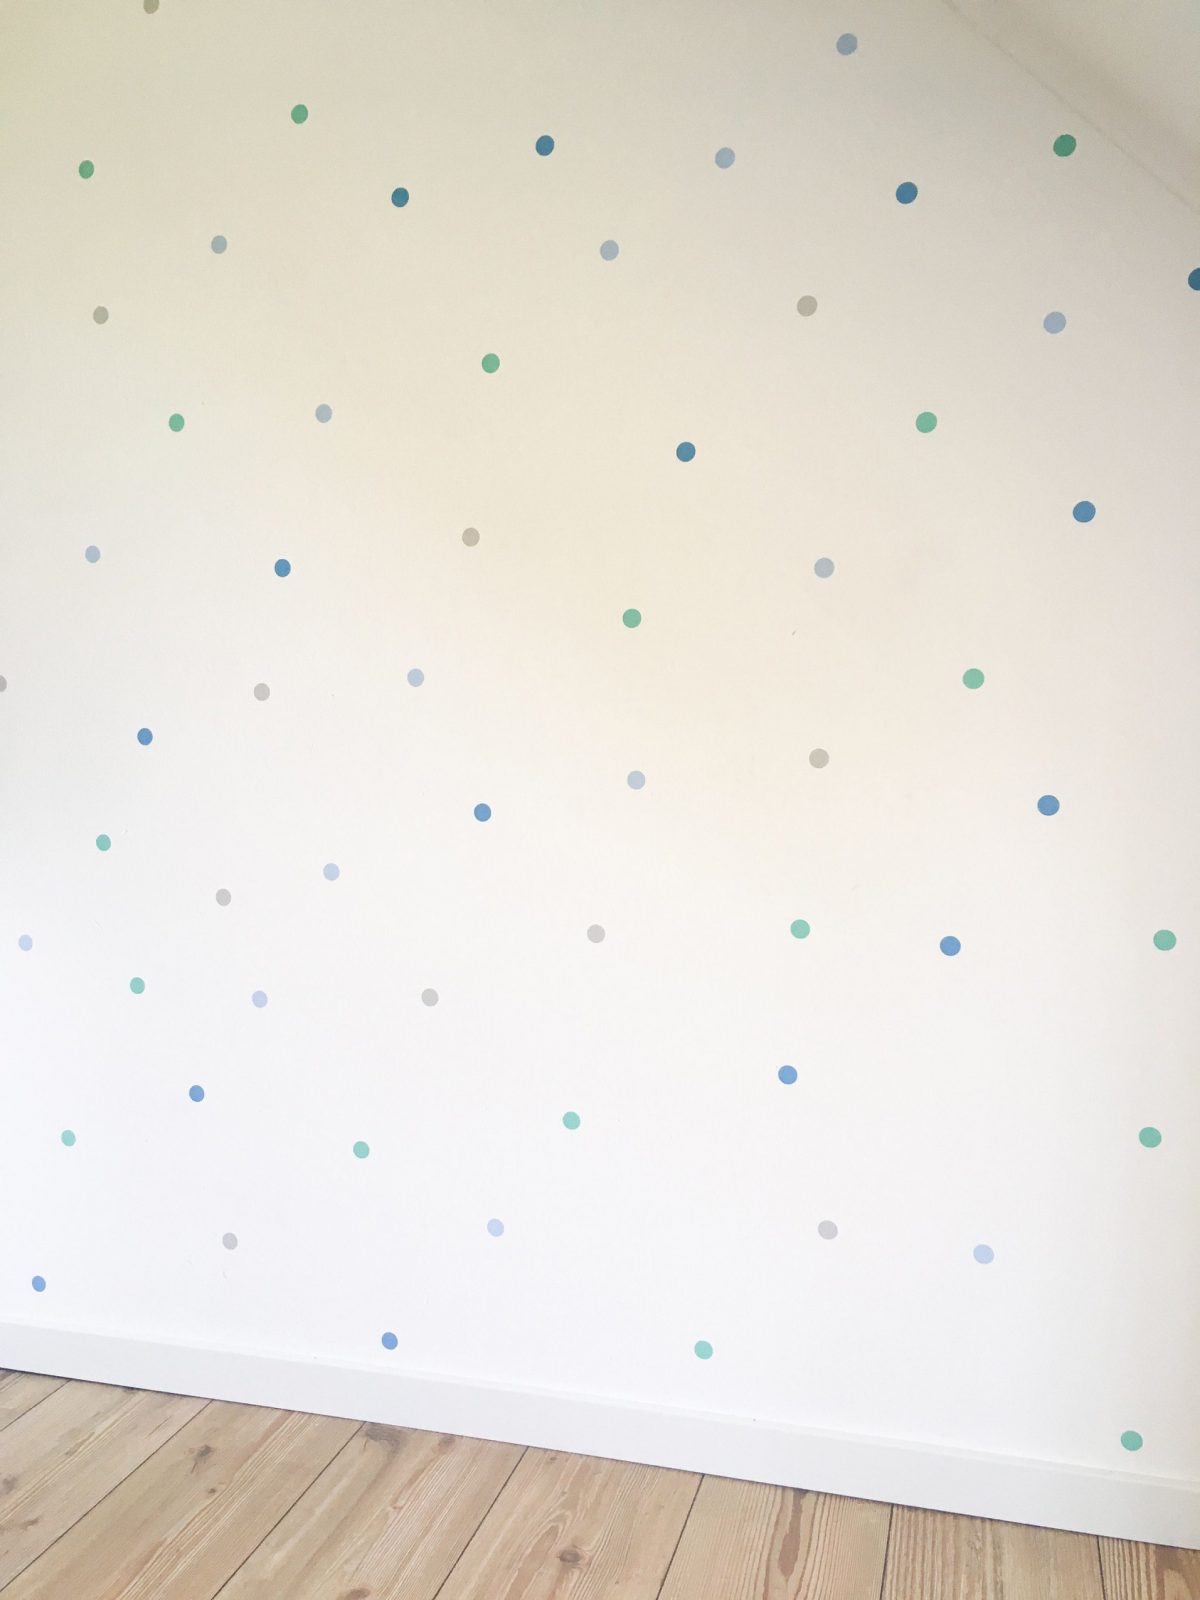 Children's Room Wall Decoration Walltattoo Dots Nursery von Babyzimmer Deko Blau Bild